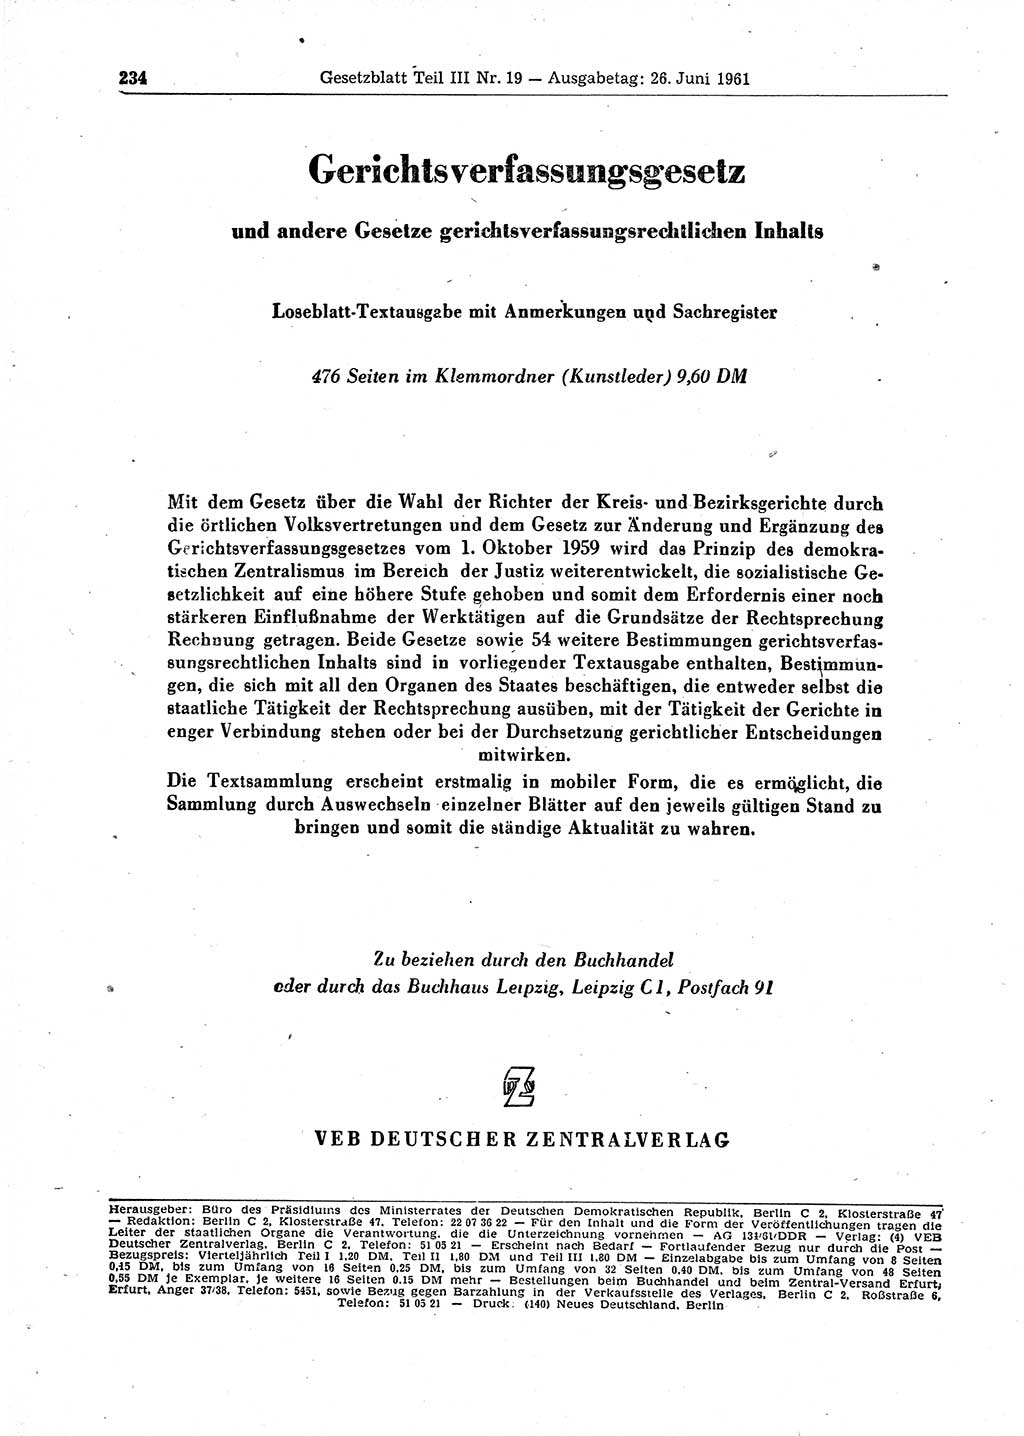 Gesetzblatt (GBl.) der Deutschen Demokratischen Republik (DDR) Teil ⅠⅠⅠ 1961, Seite 234 (GBl. DDR ⅠⅠⅠ 1961, S. 234)